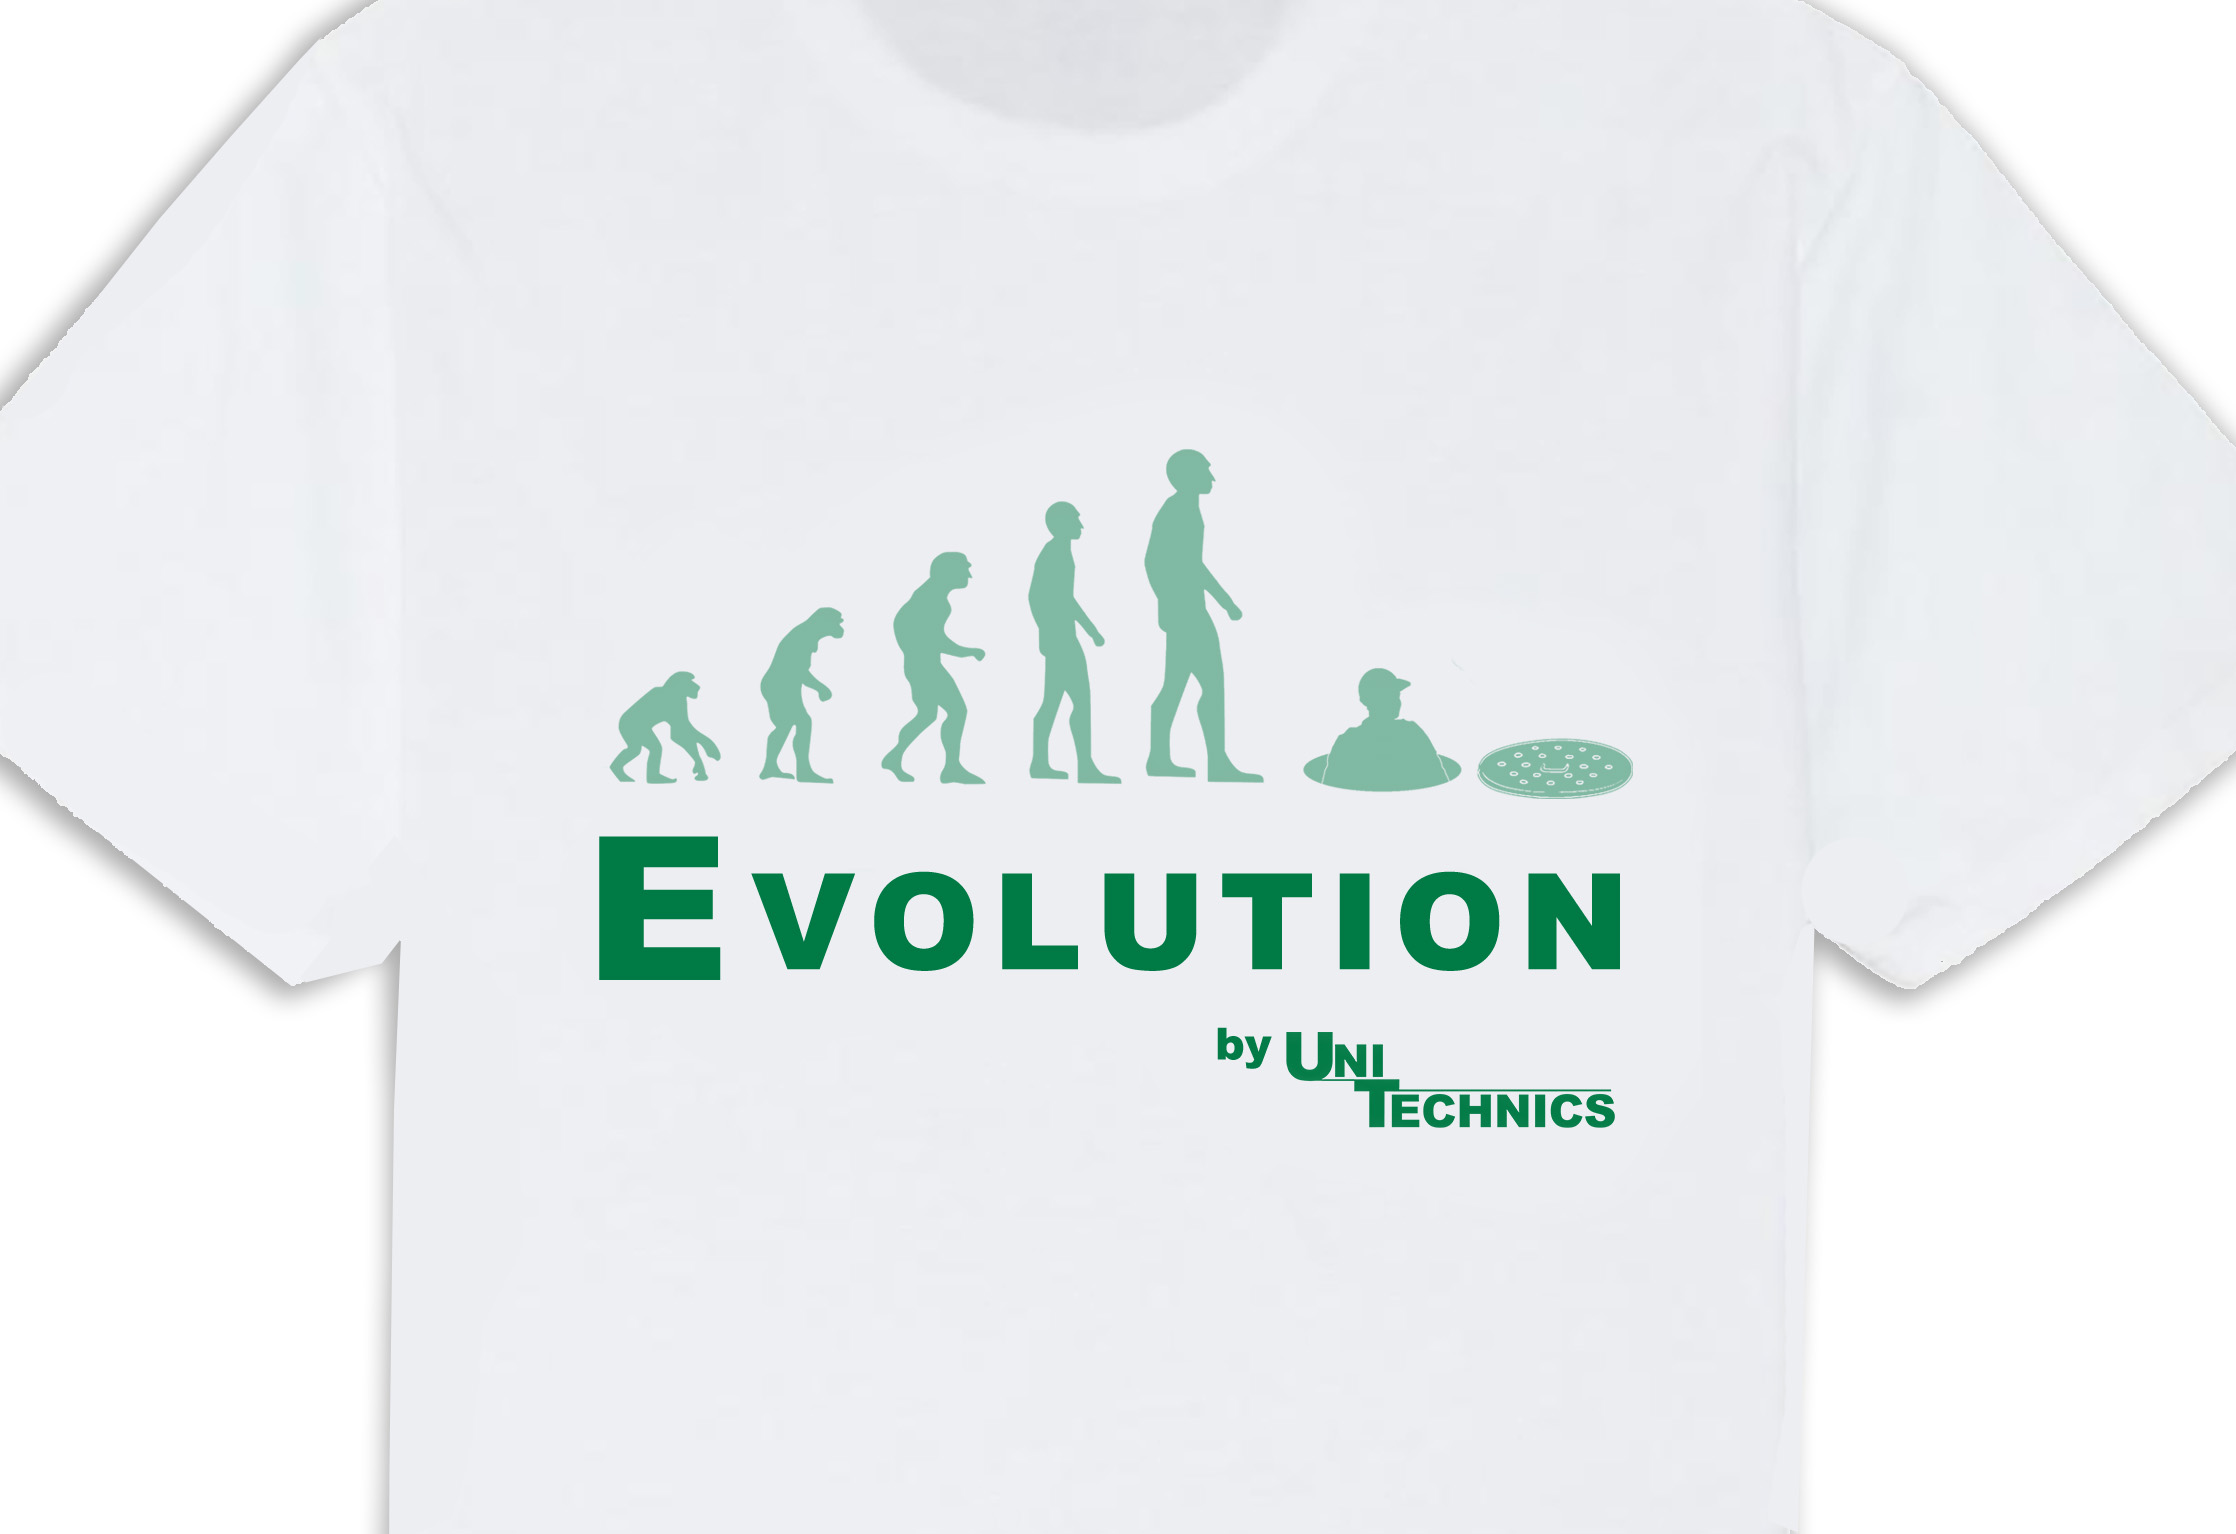 EVOLUTION Arbeits-T-Shirt  in Größen M-XL erhältlich